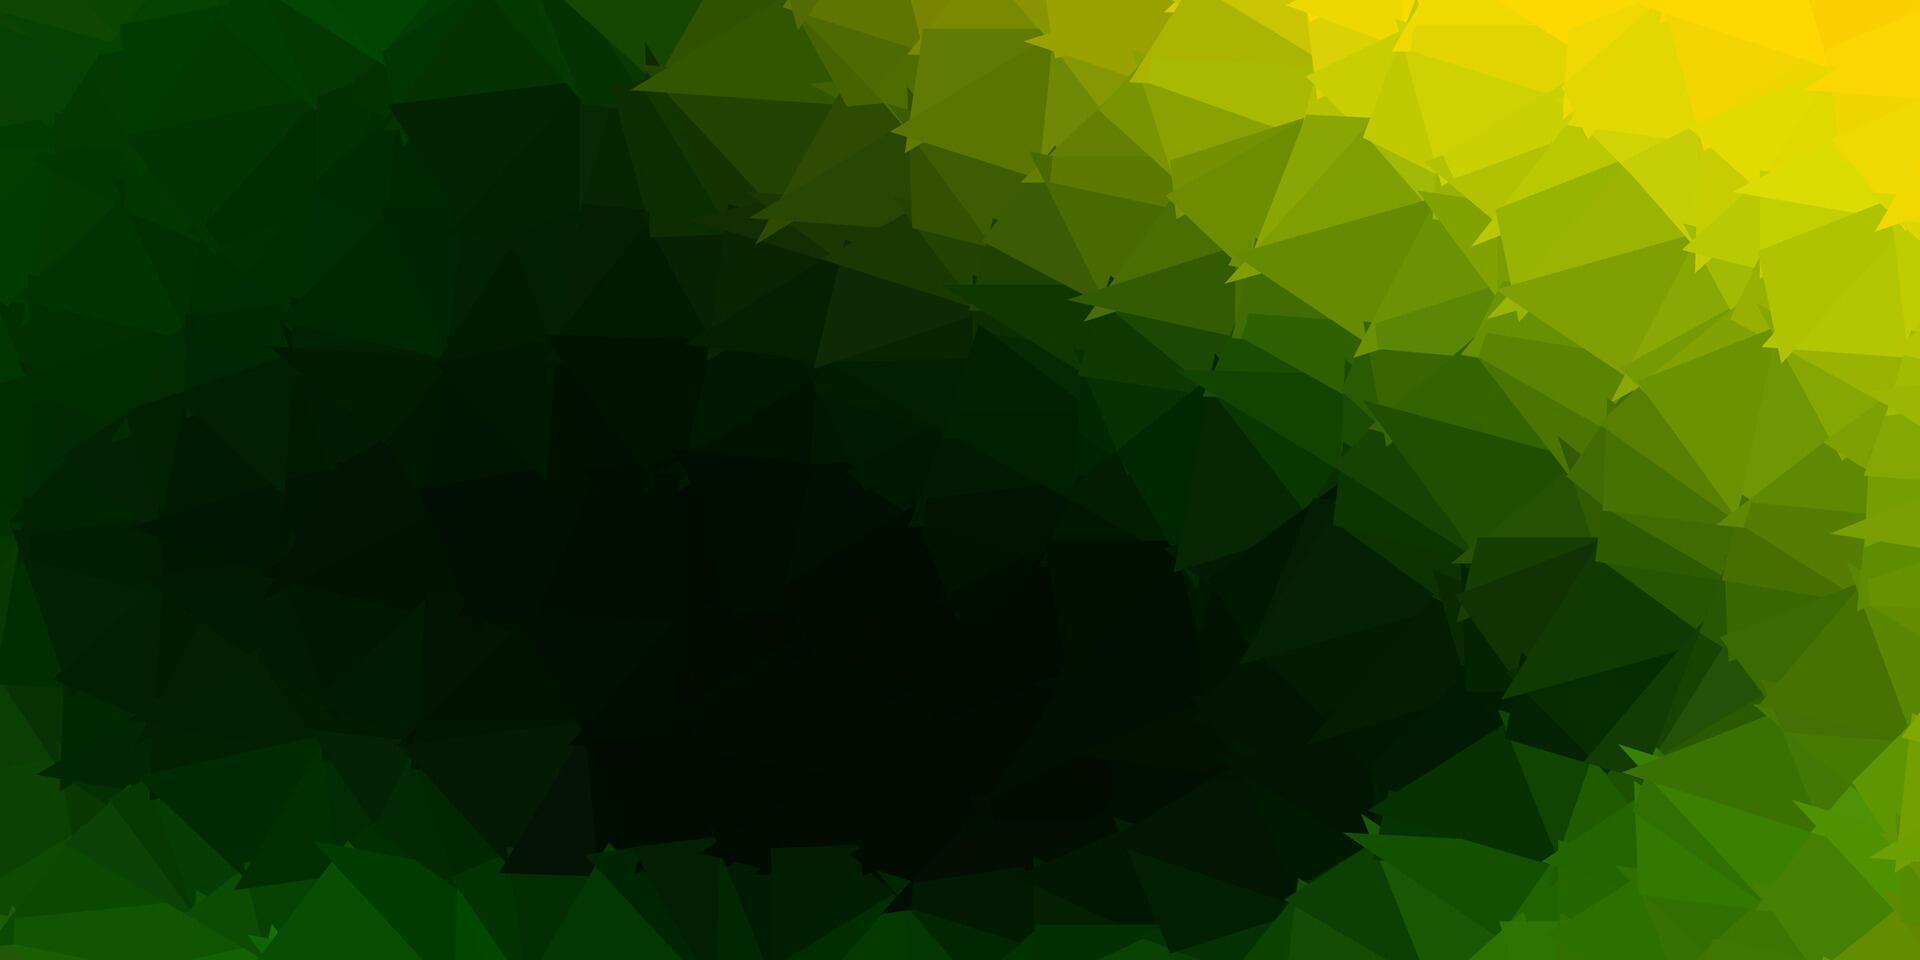 diseño poligonal geométrico vector verde oscuro, rojo.